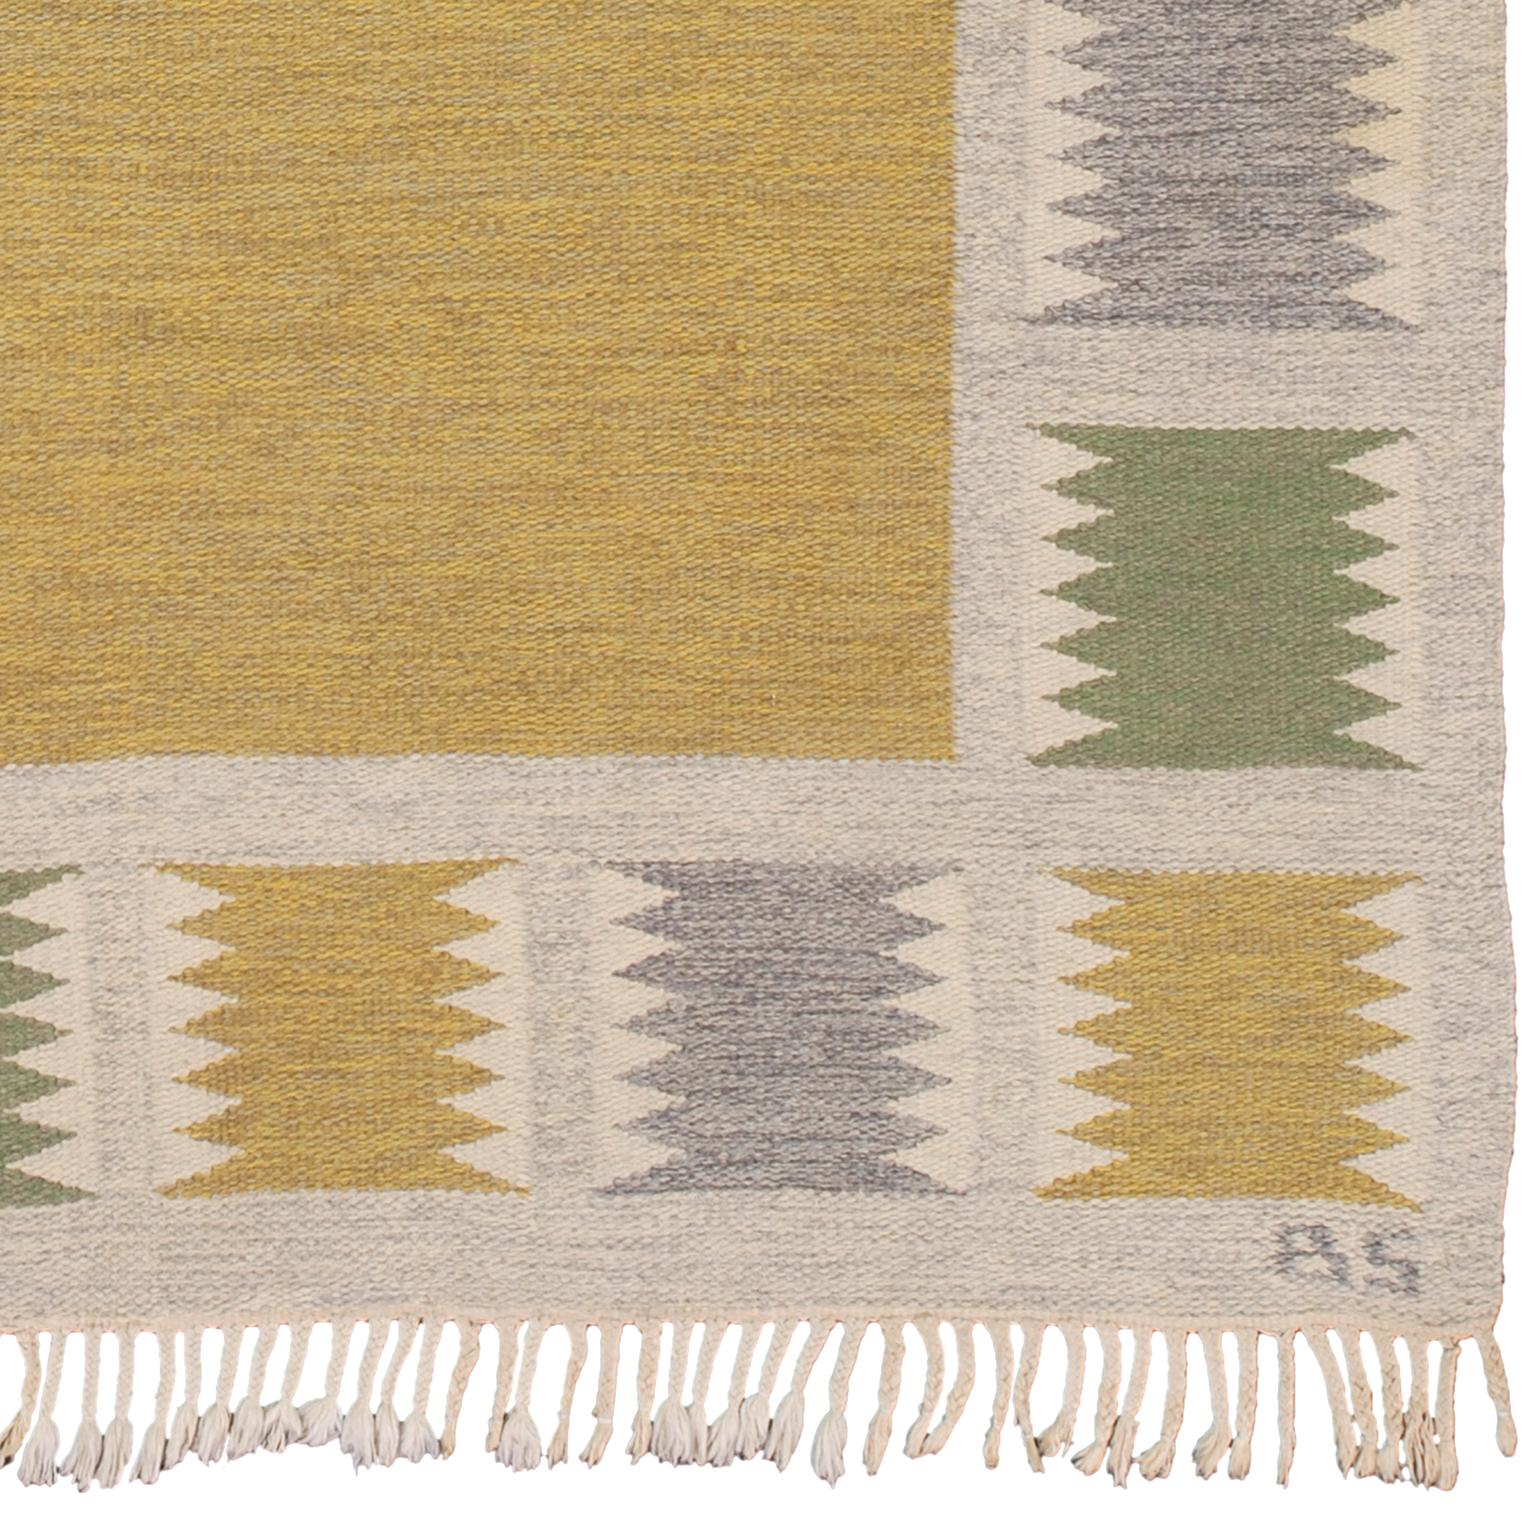 Swedish flat-weave rug
Sweden, circa 1940
Handwoven.
Initialed: BS (Birgitta Sodergren).